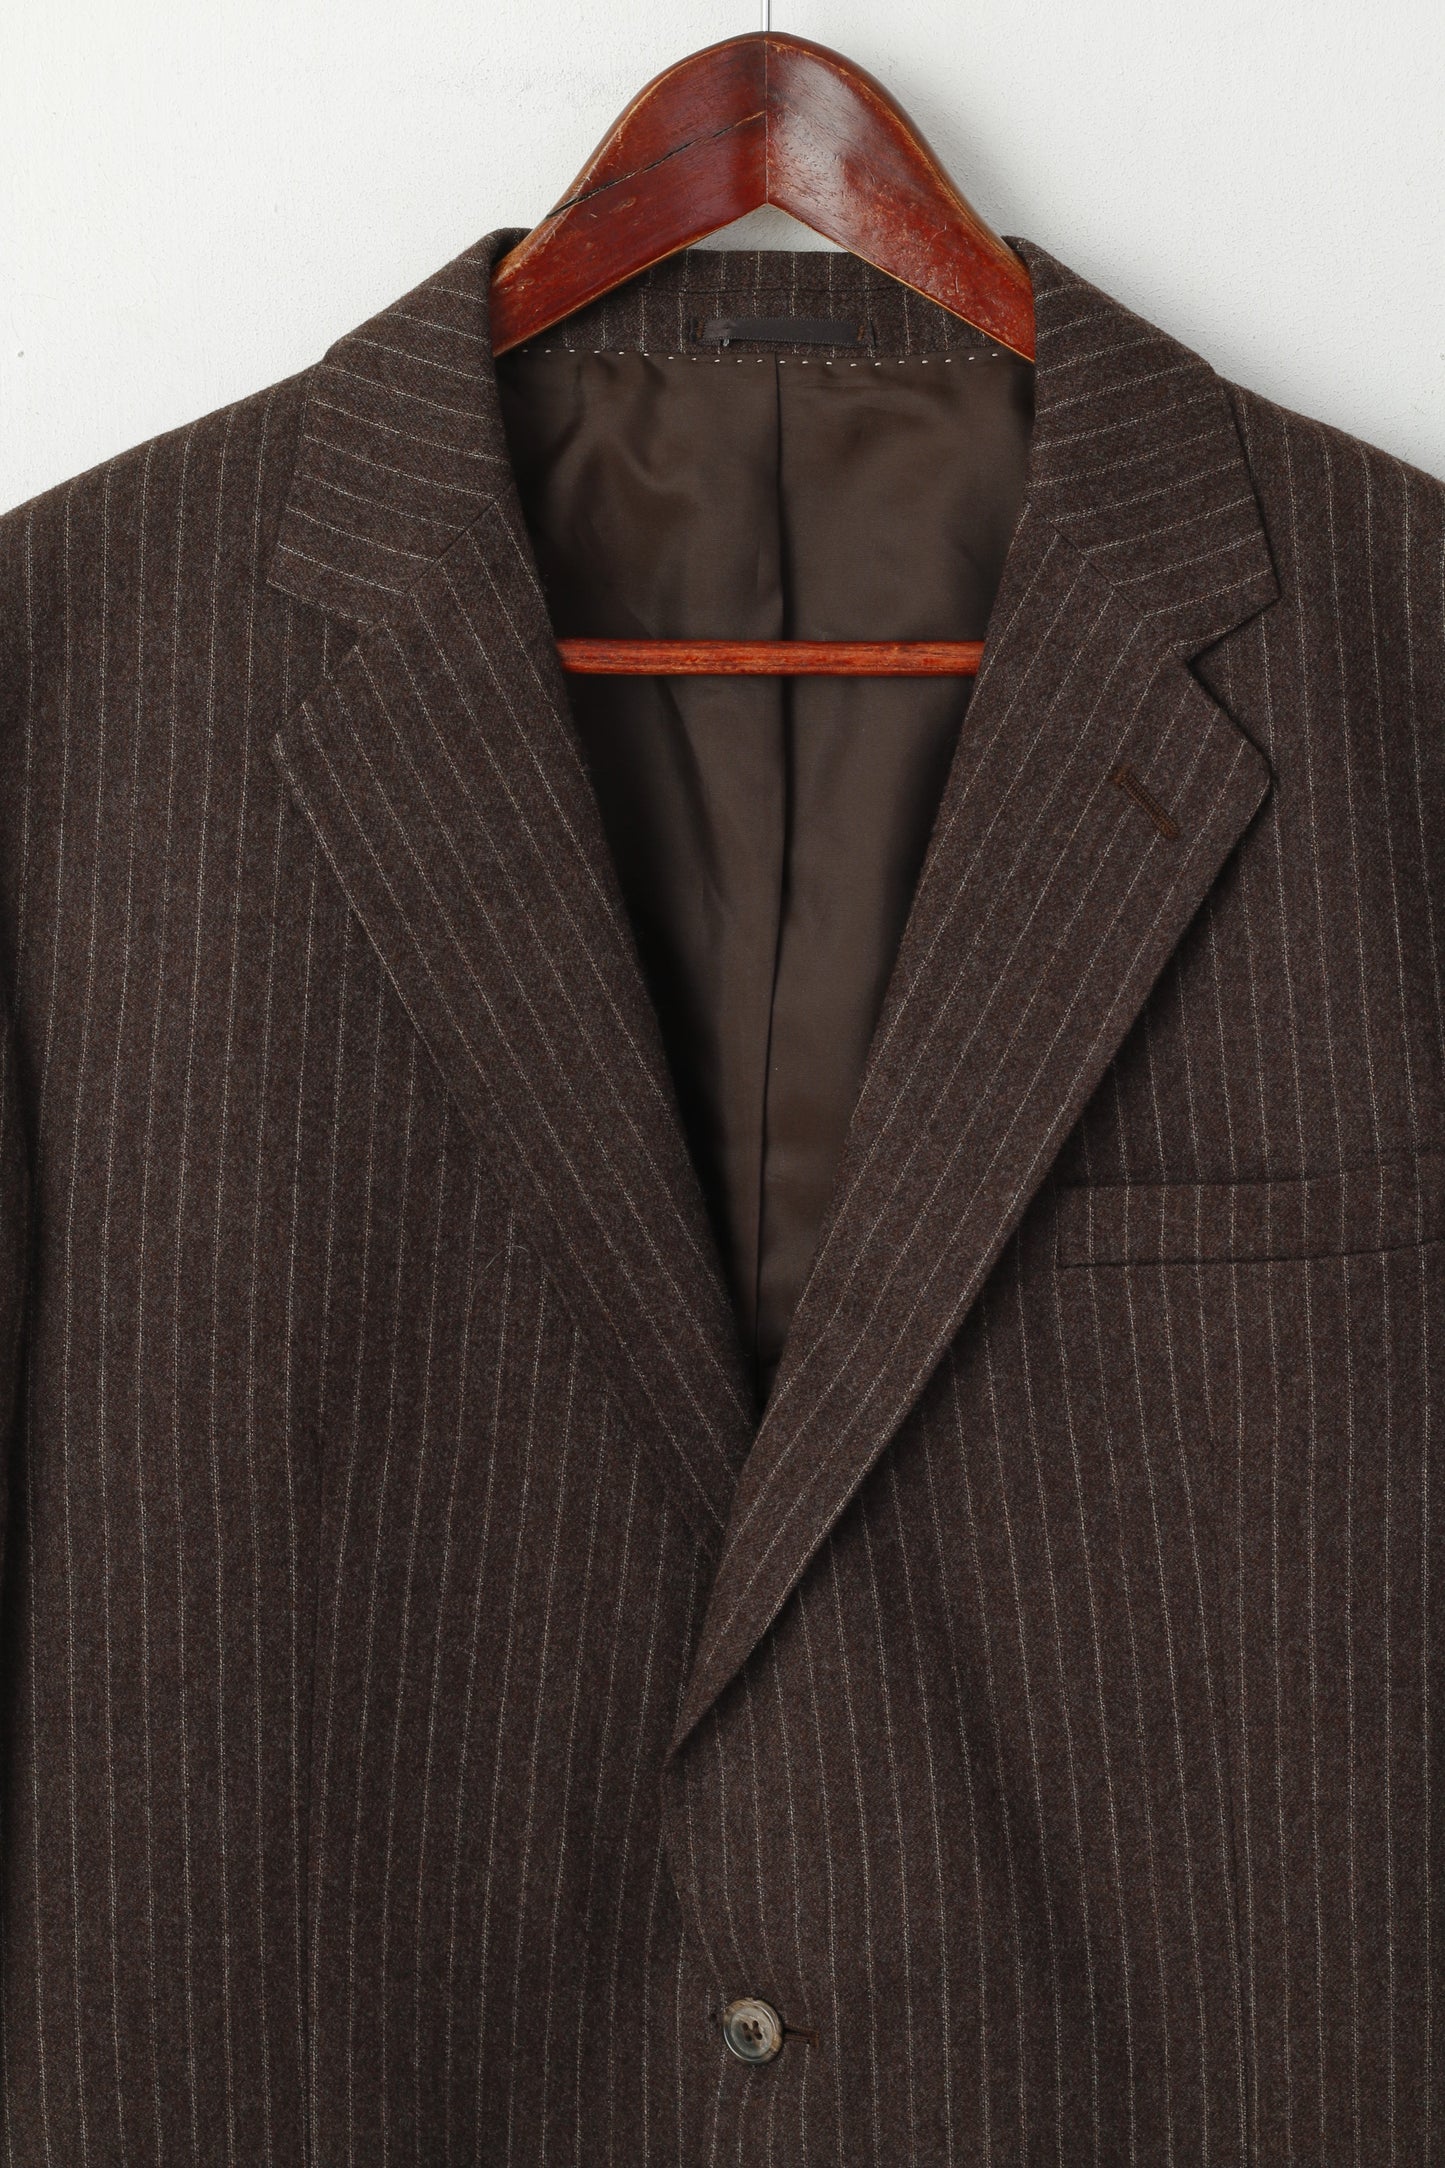 Centaur Men 44 Blazer Brown Striped British Drummond New Wool Single Breasted Jacket